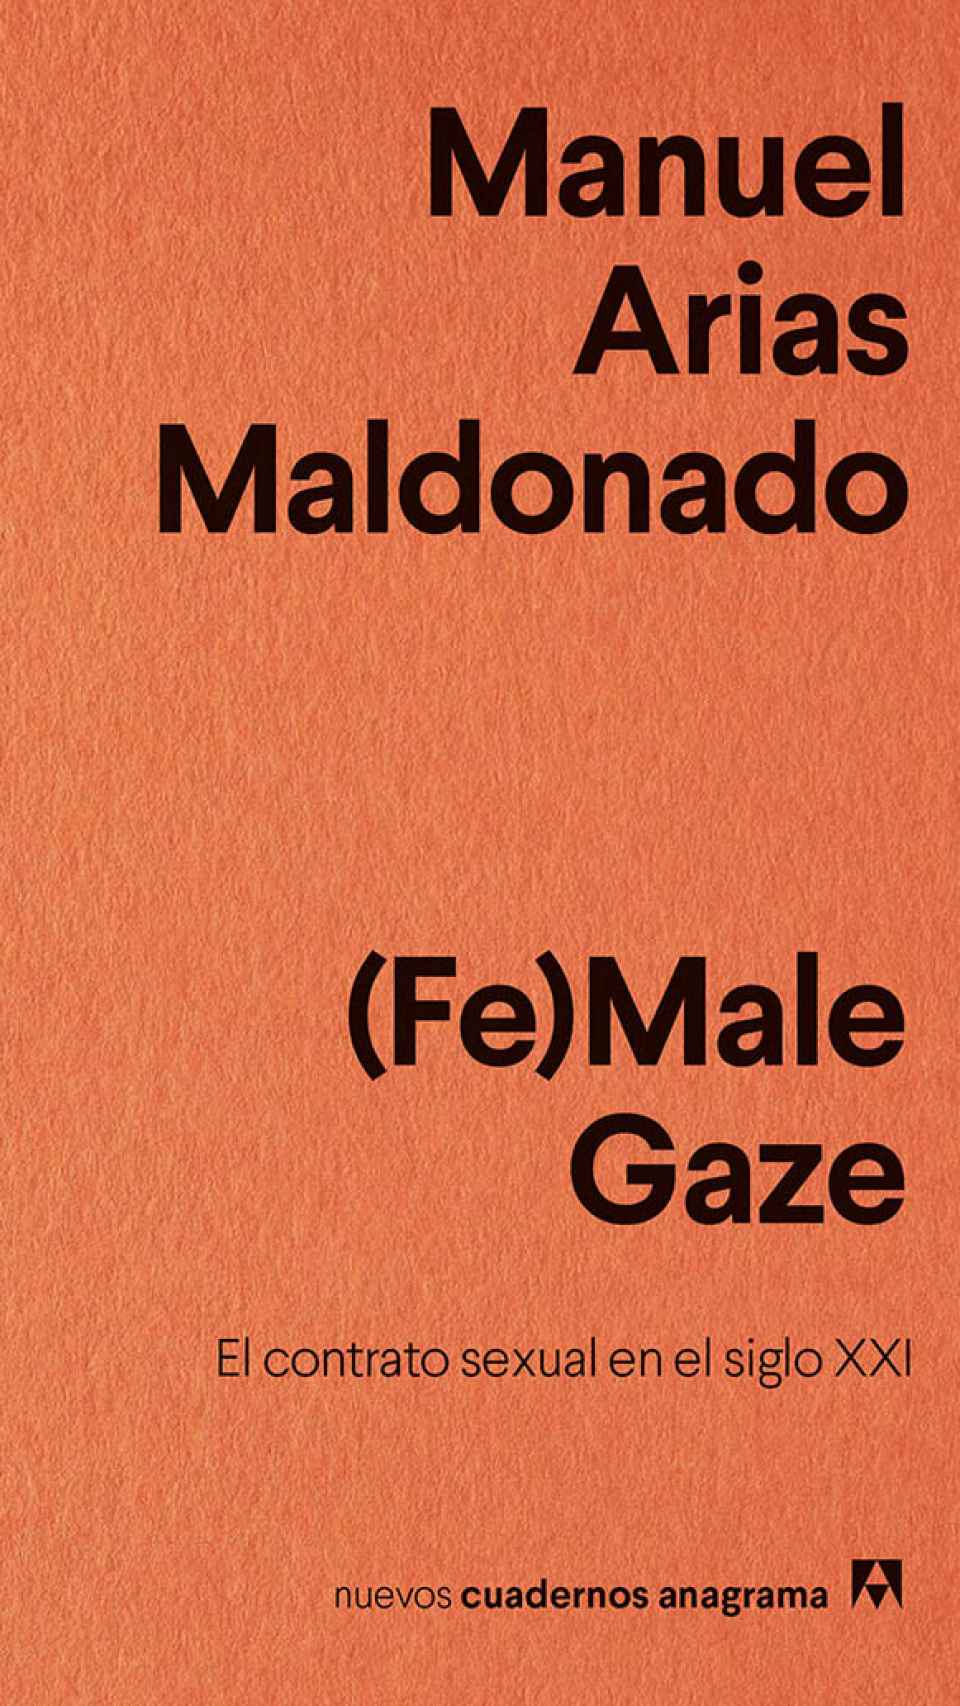 (Fe)Male Gaze. El contrato sexual en el siglo XXI